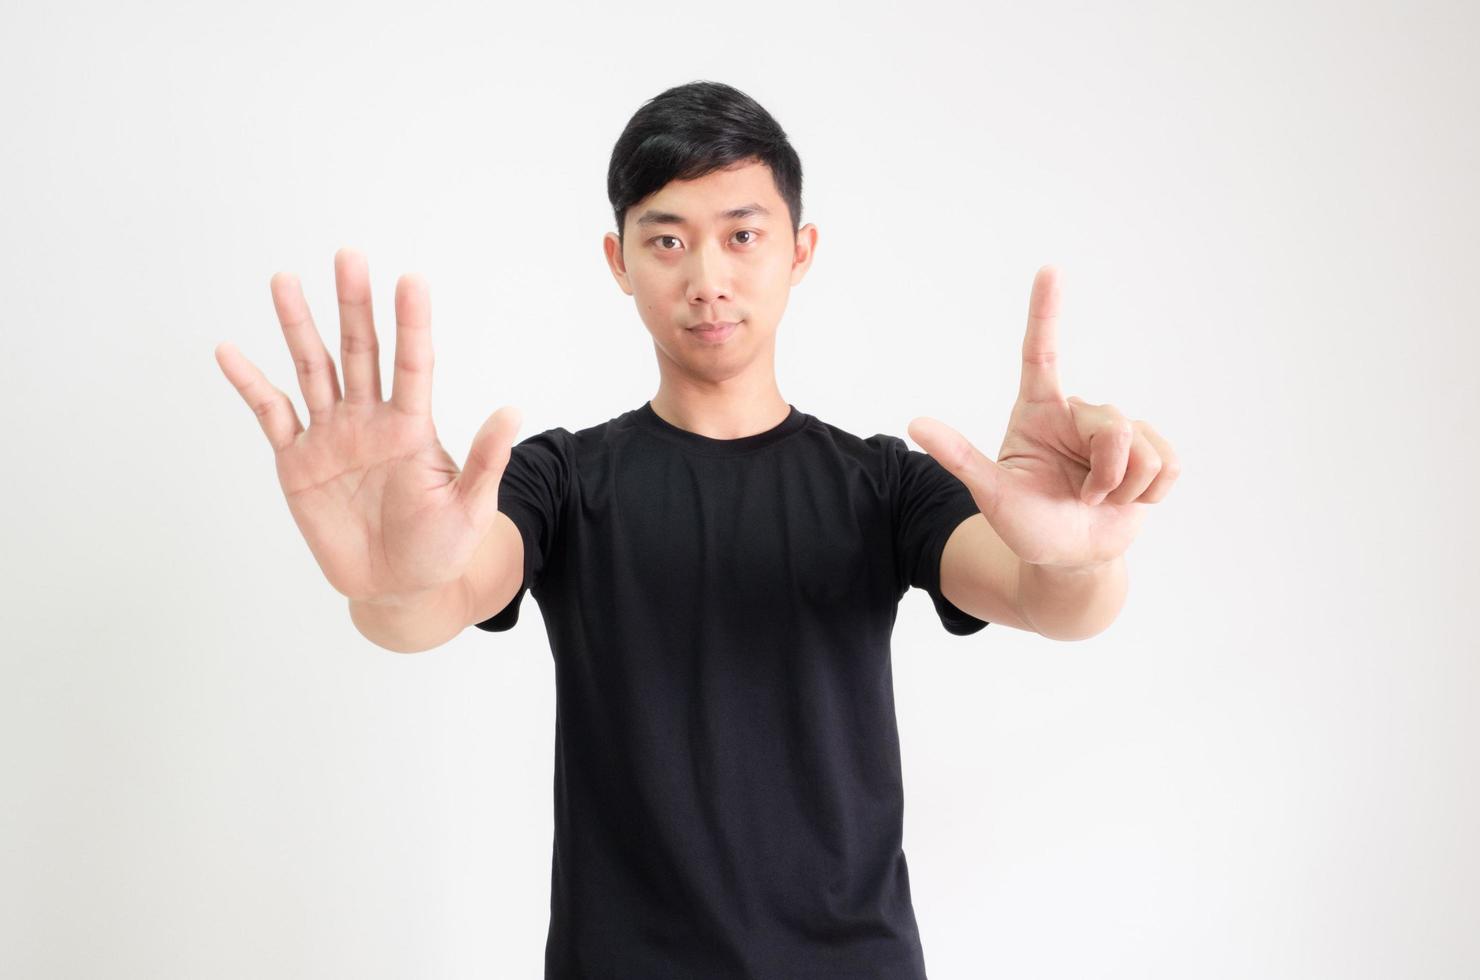 jovem asiático camisa preta contar de um a dez à mão meio corpo em fundo branco isolado, homem contando o conceito de número foto